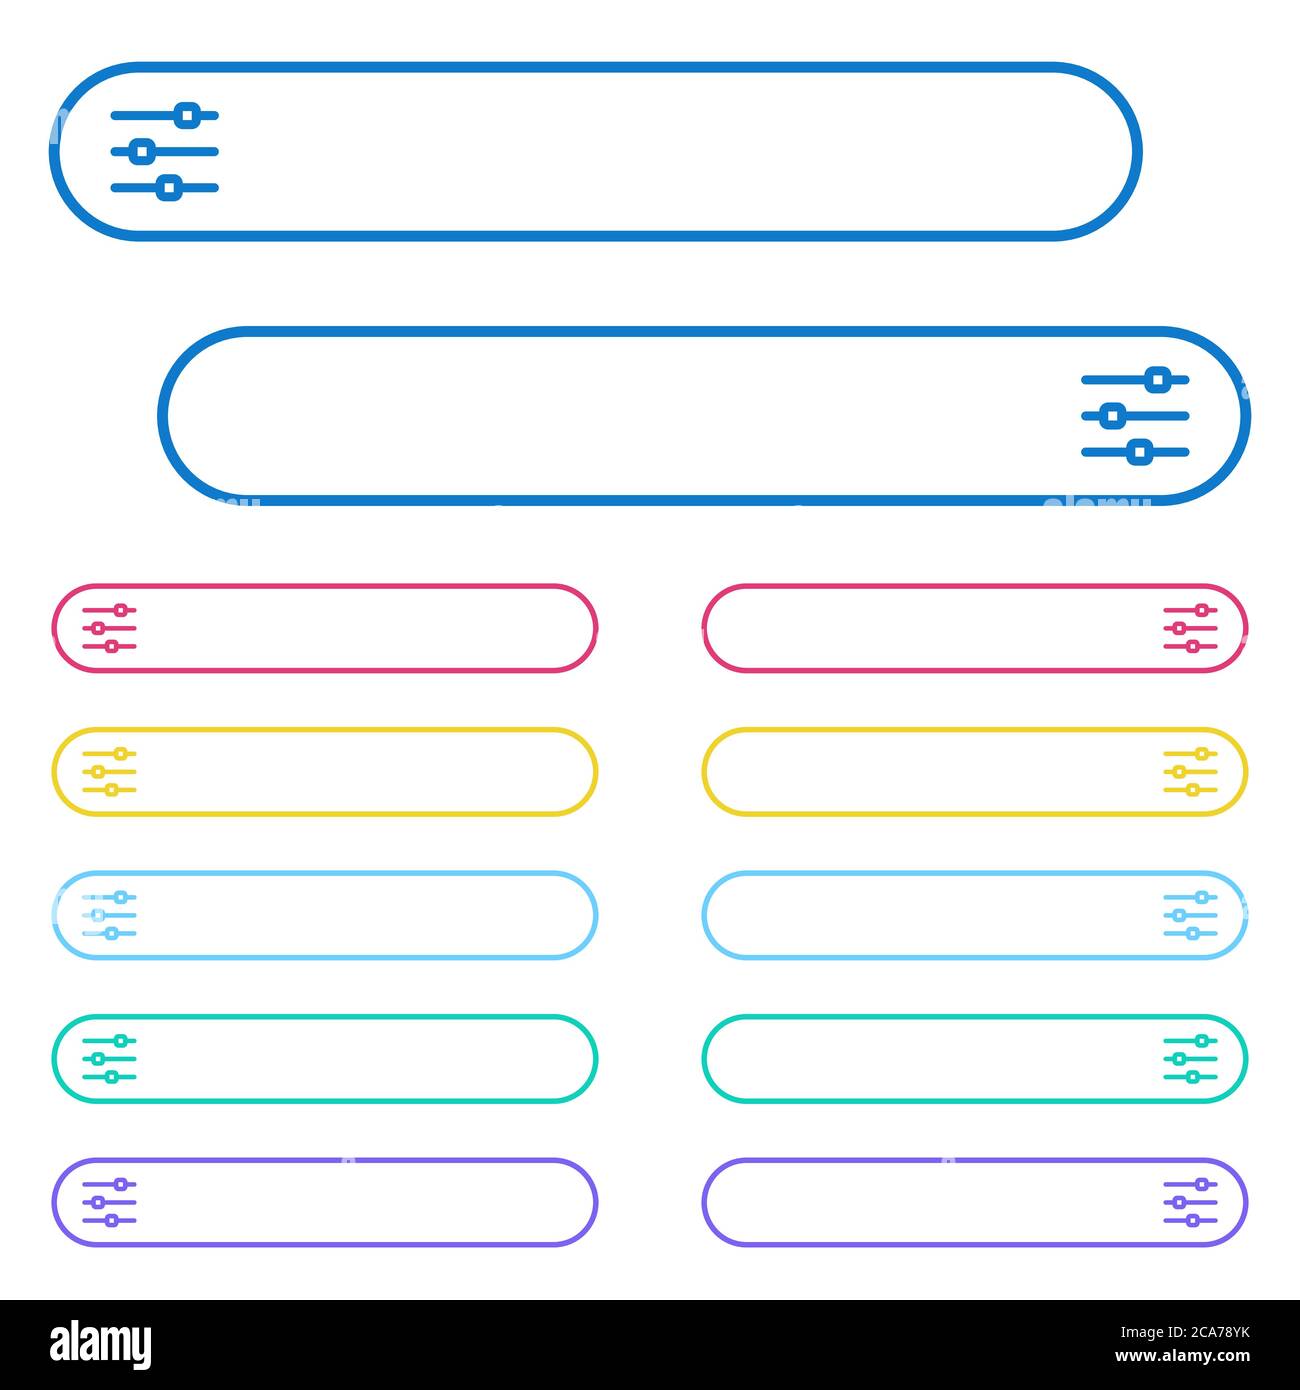 Symbole für die horizontale Anpassung in den Menüschaltflächen mit abgerundeten Farben. Symbole auf der linken und rechten Seite. Stock Vektor